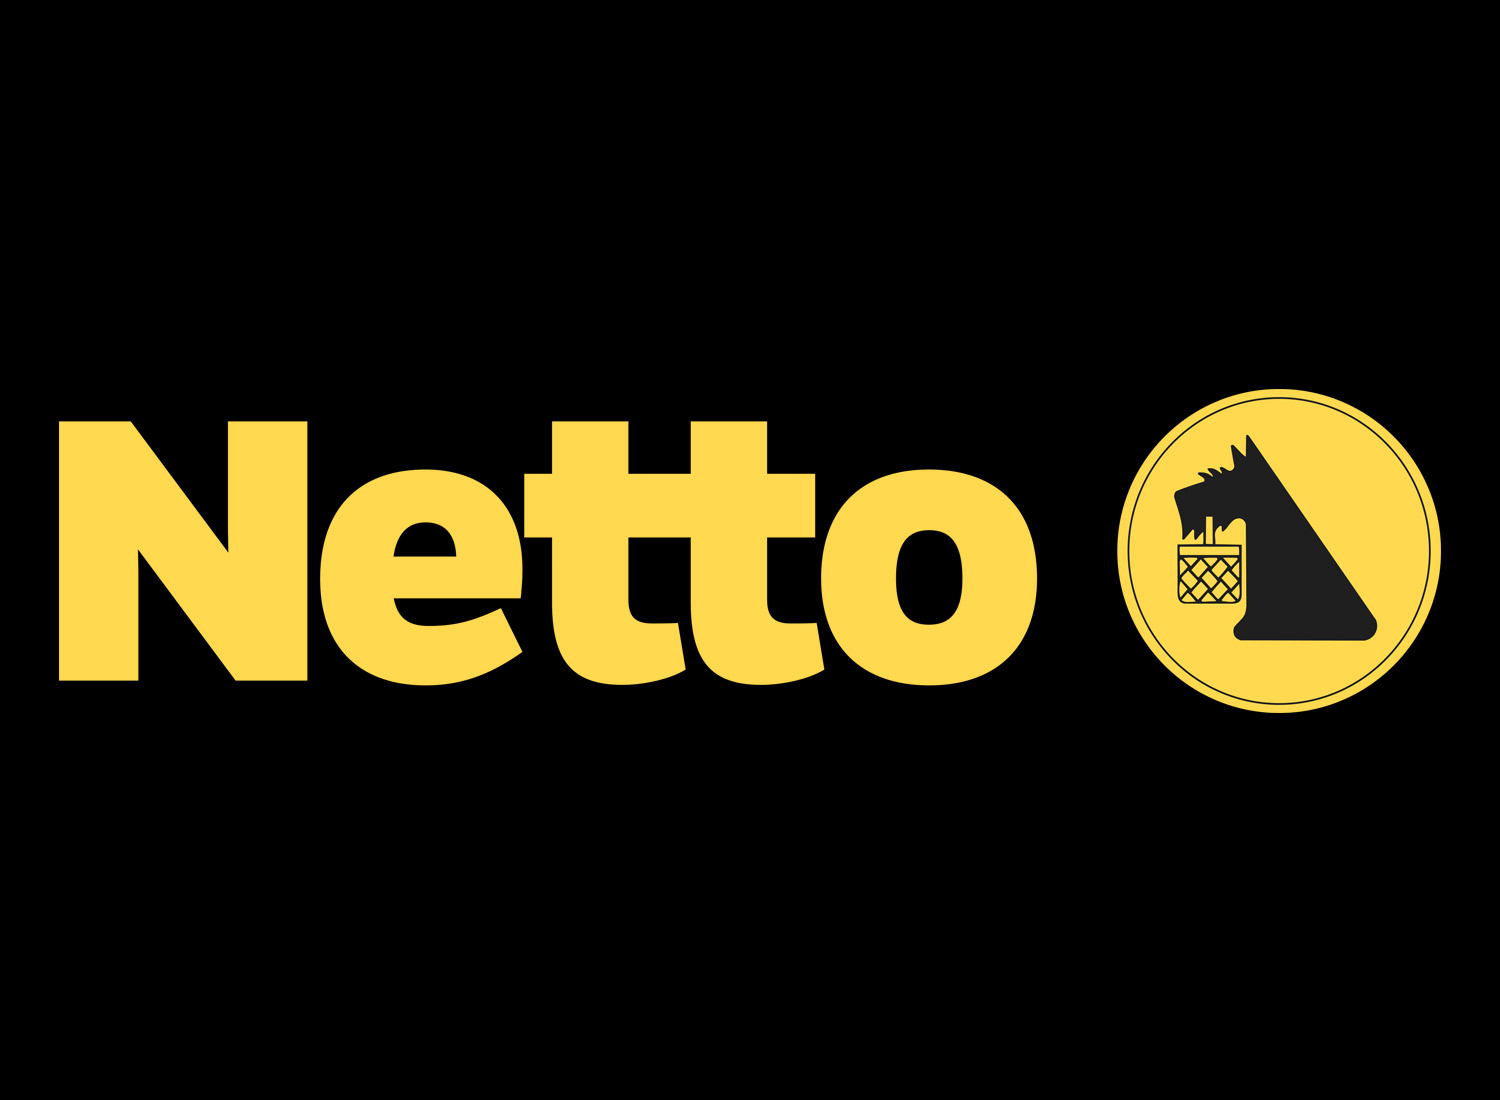 NETTO (Handelskette) Logo (2019), Quelle: NETTO